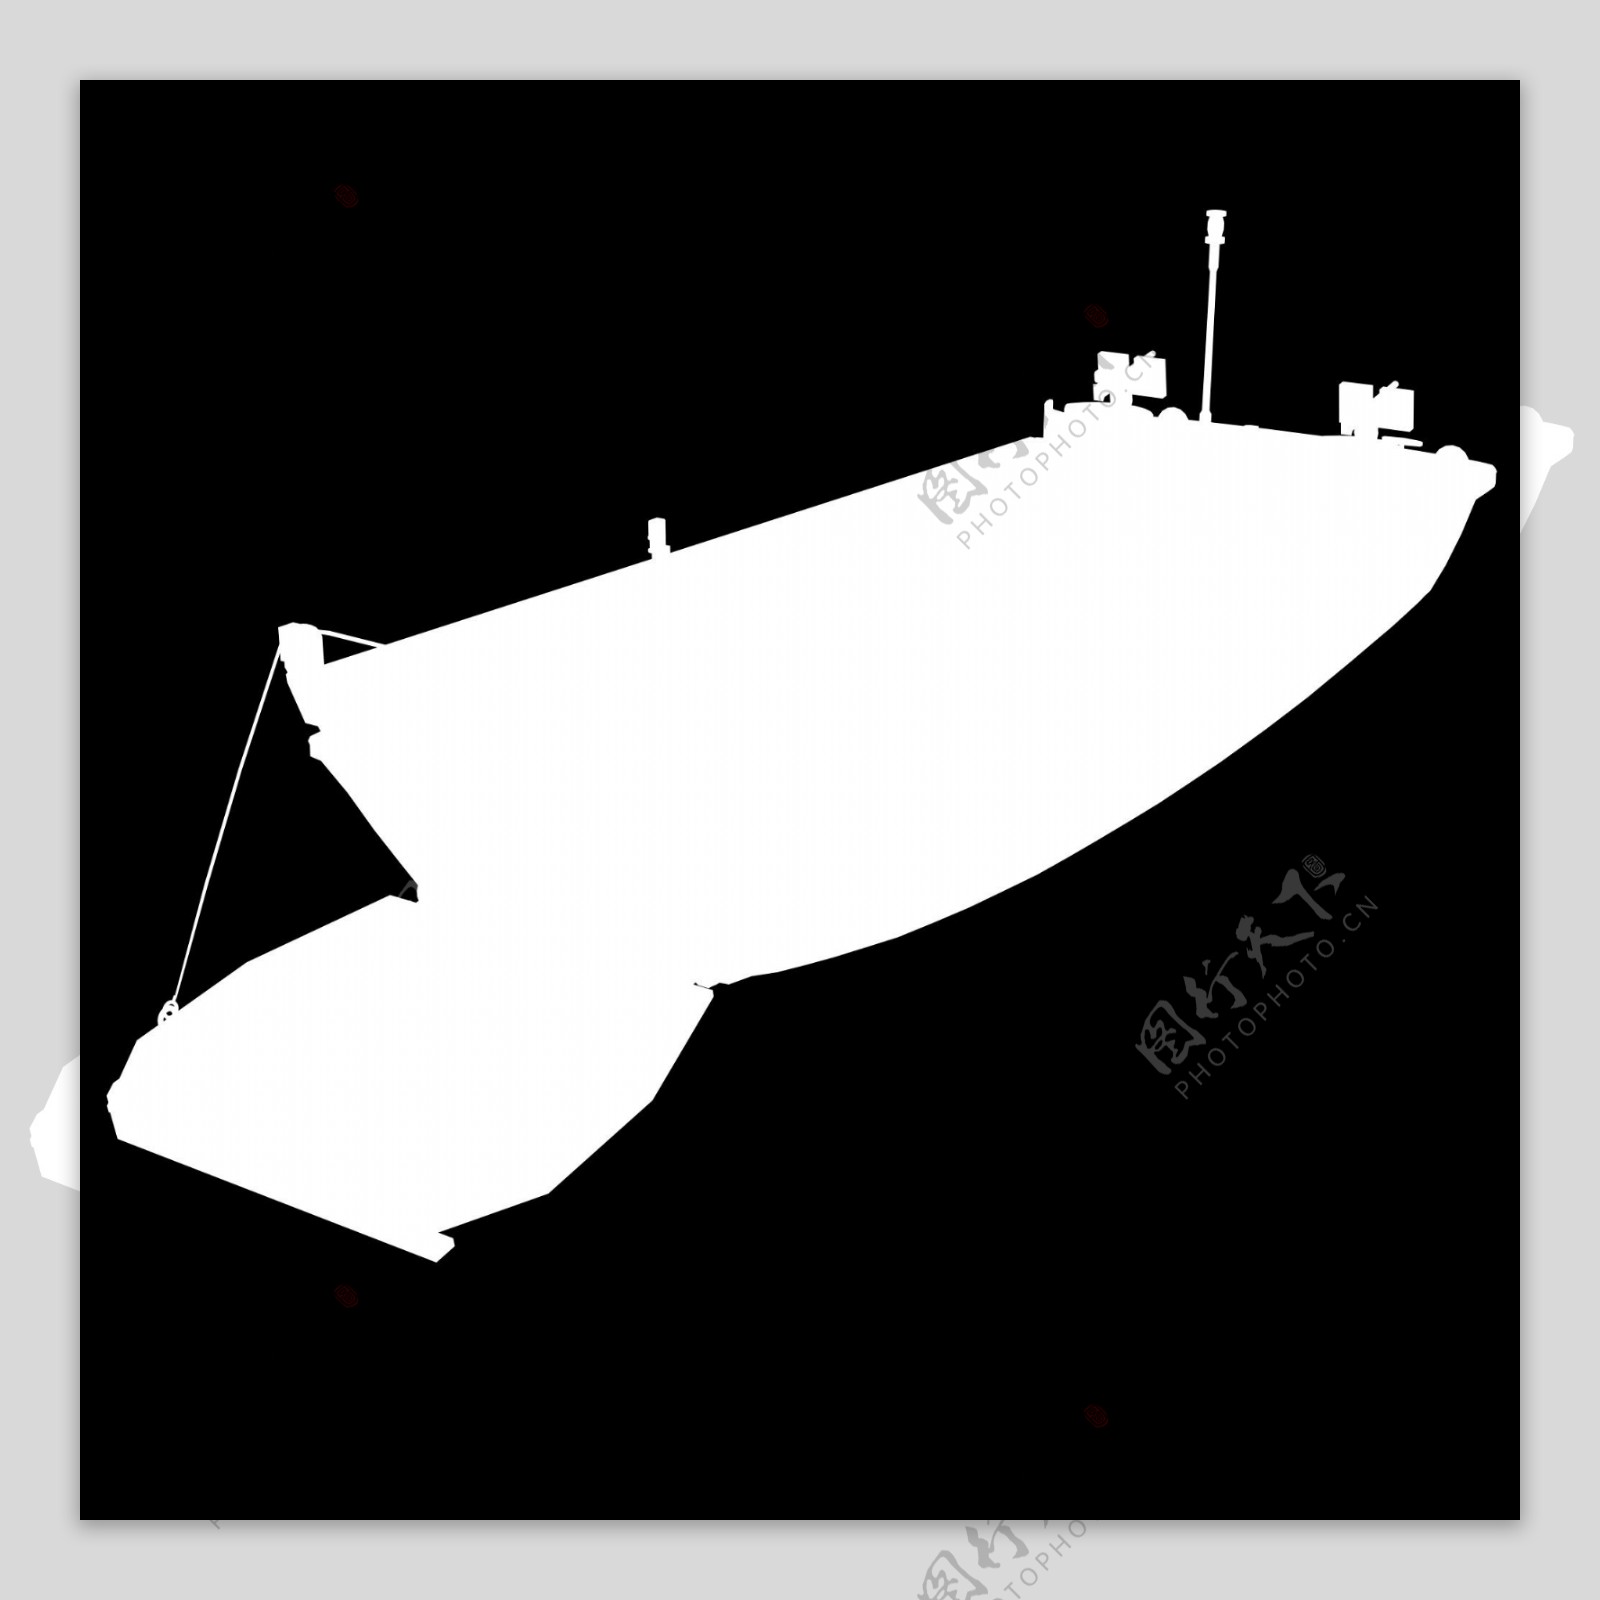 军用装备战舰3d模型素材免费下载军用船模型素材11